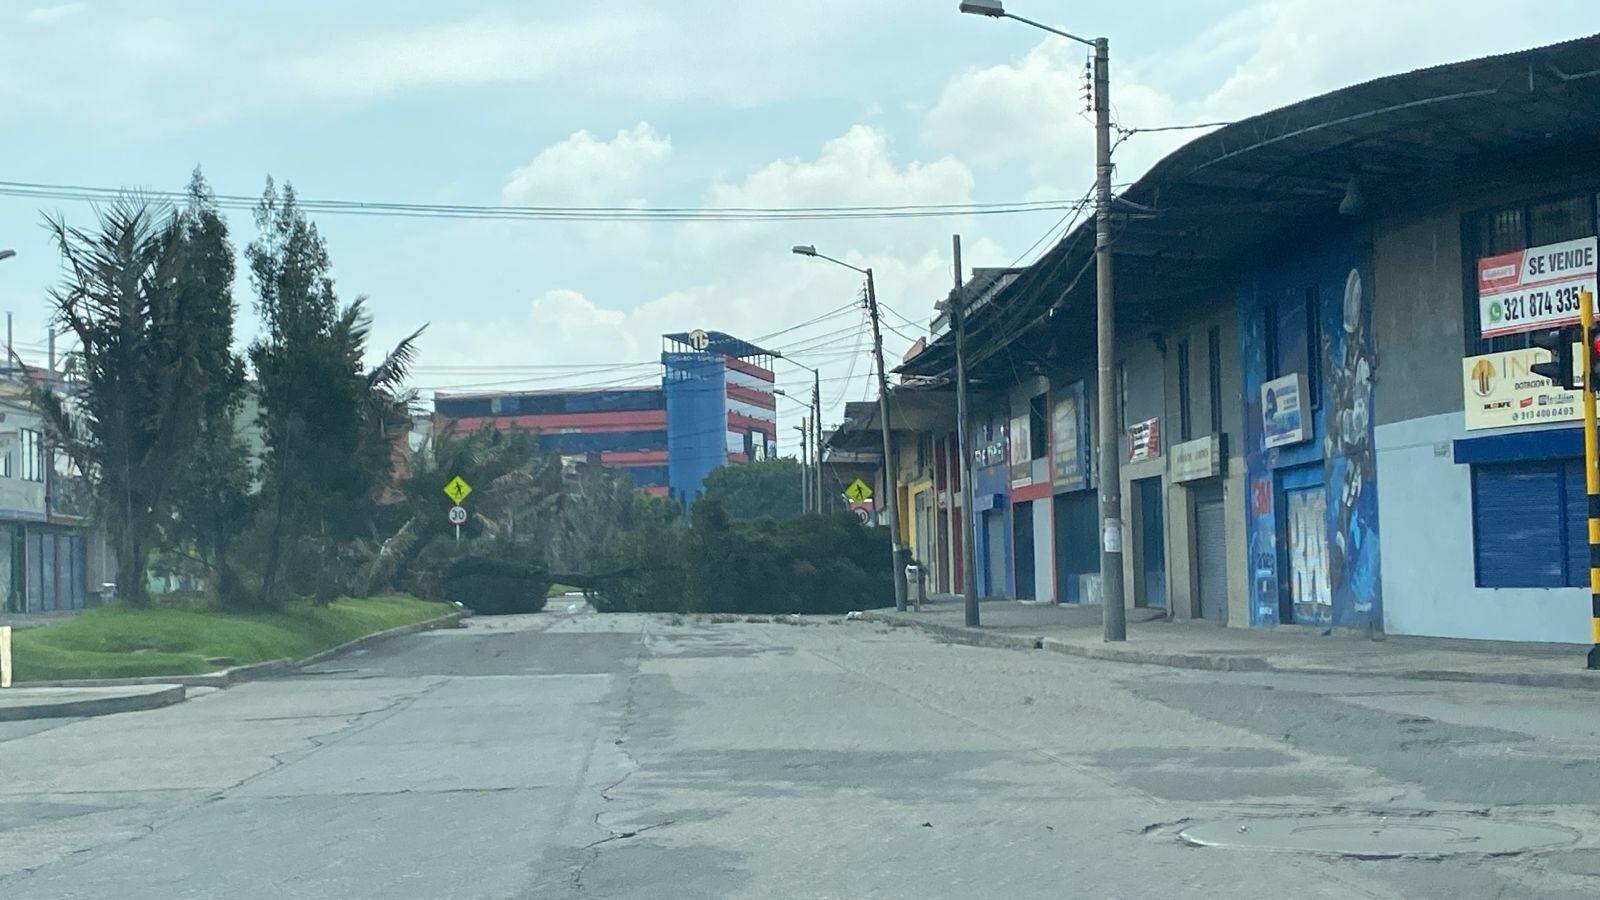 Autoridades reportaron la caida de un árbol en el sector de Paloquemao, en Bogotá - crédito @BogotaTransito/X